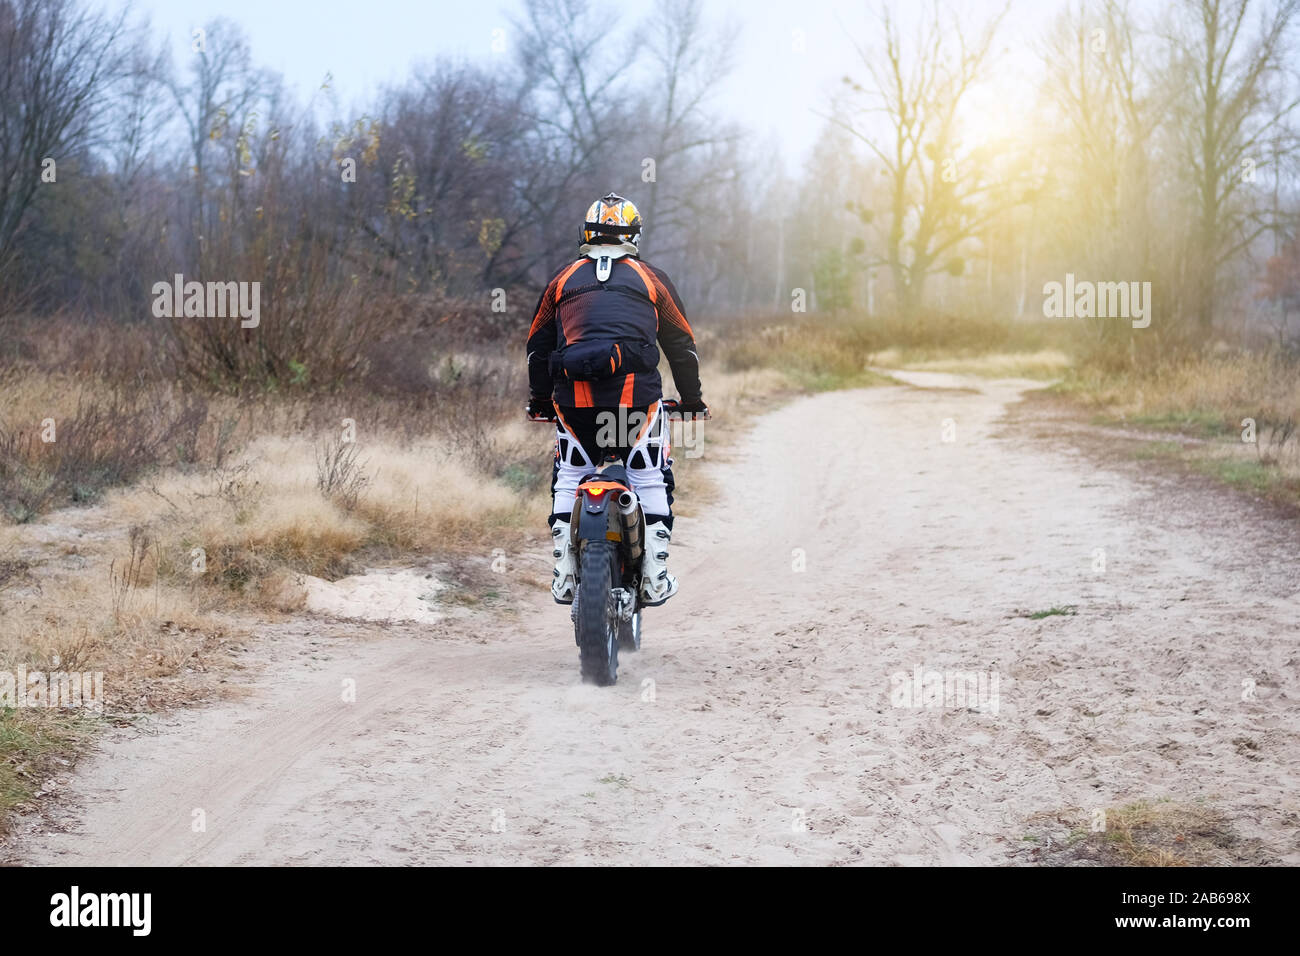 Sport und Aktiv gesund leben Konzept. Der Motorradfahrer in den späten Herbst Wald. Reiten auf Motorrad an einem sonnigen Tag unter vielen Bäumen. Stockfoto